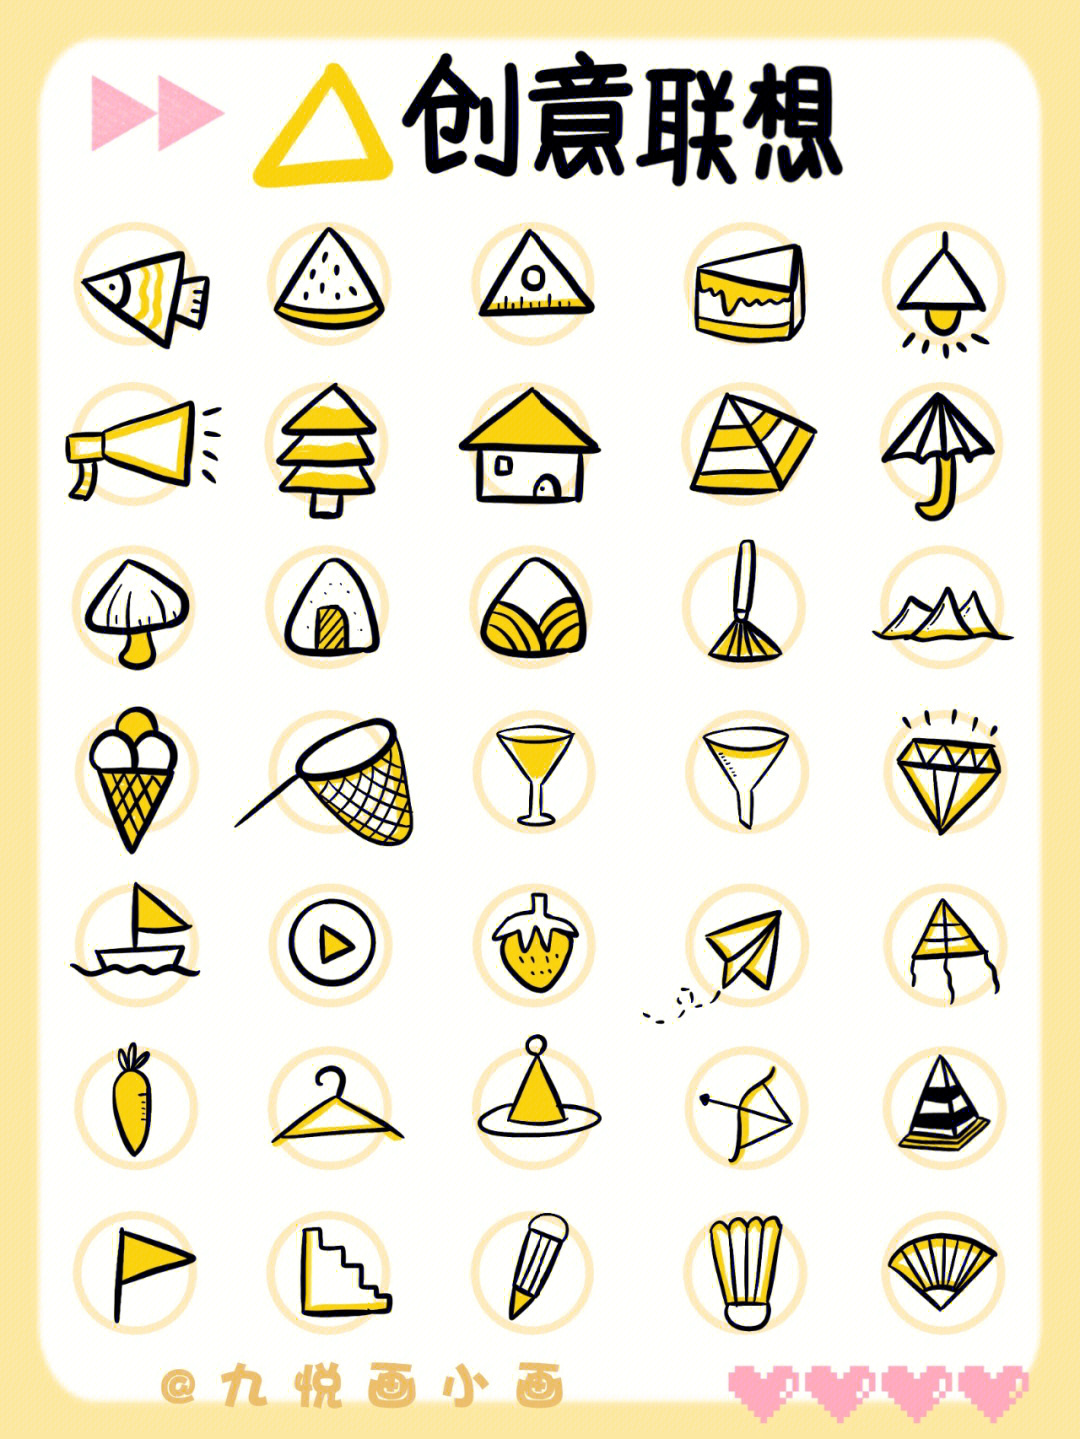 三角形联想50个物体图片